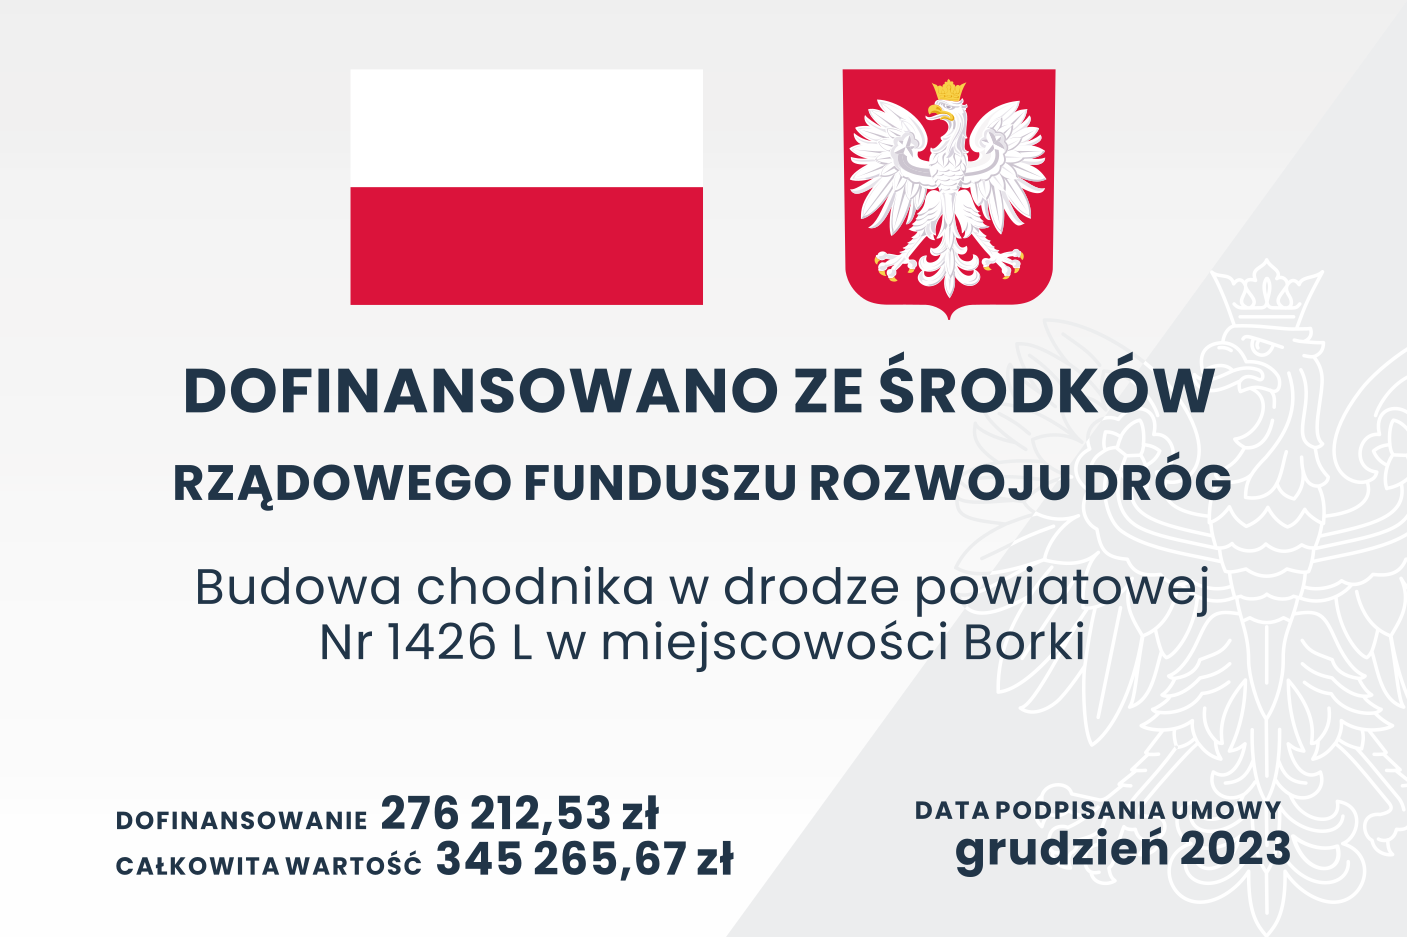 Plakat informacyjny o dofinansowaniu z Rządowego Funduszu Rozwoju Dróg na budowę chodnika w Borkach, z kwotą dofinansowania i całkowitą wartością projektu, datą podpisania umowy i grafiką flagi Polski oraz godła.